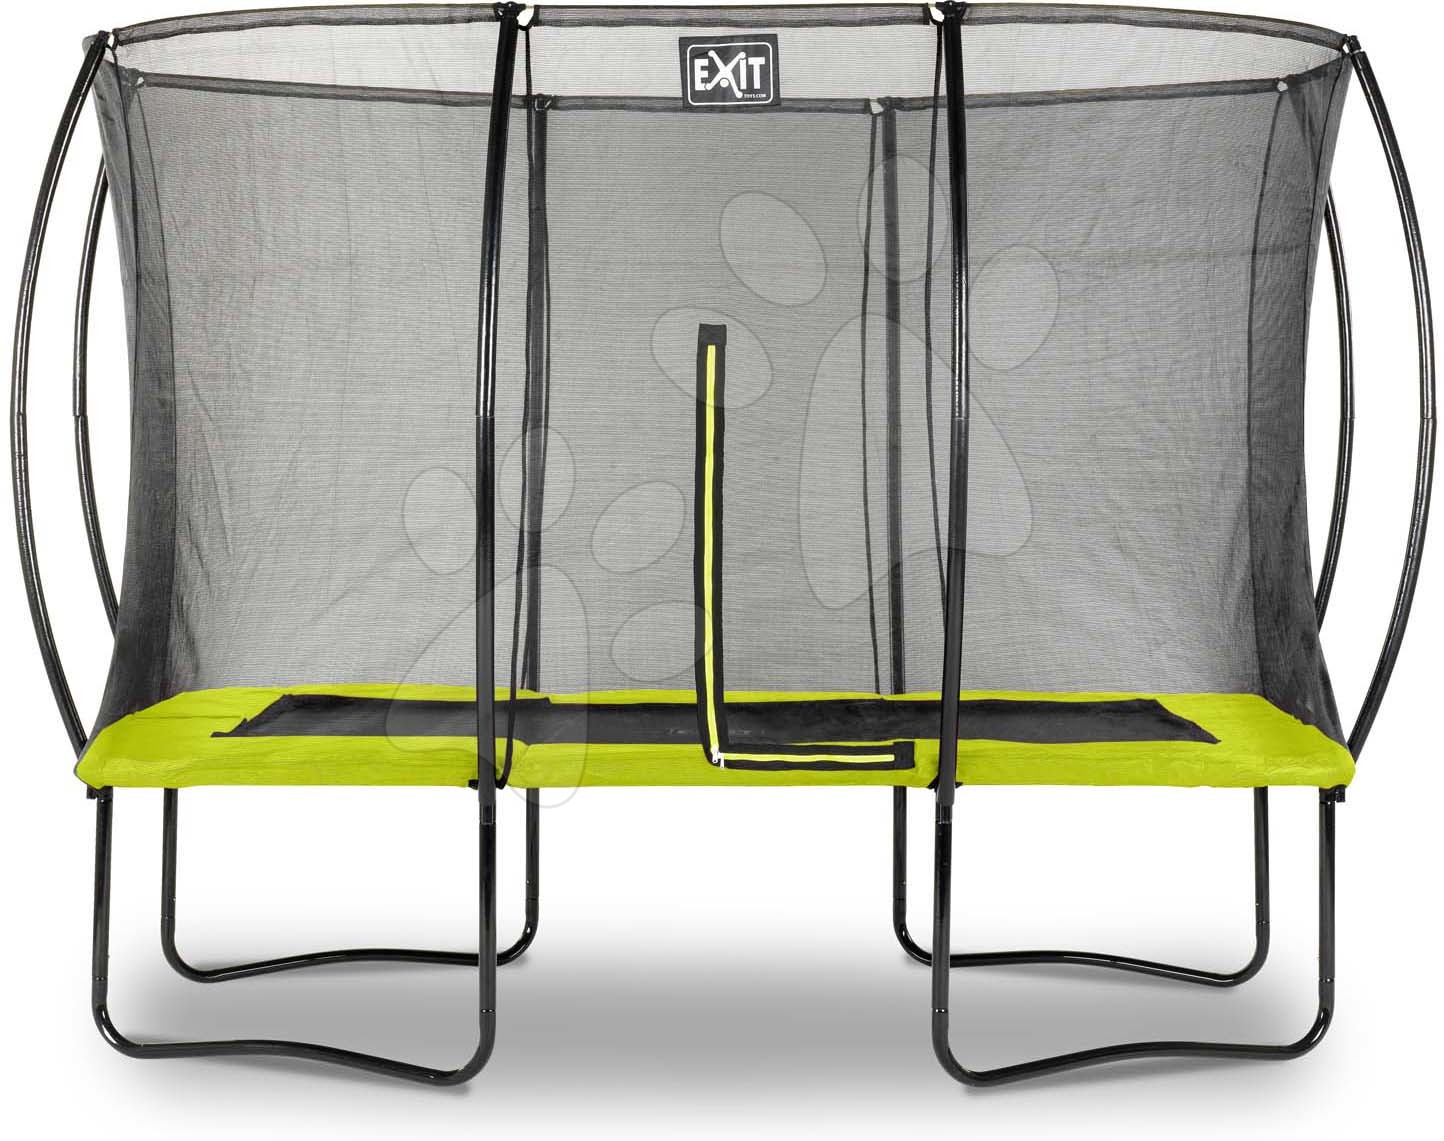 Trampolíny s ochrannou sítí - Trampolína s ochrannou sítí Silhouette trampoline Exit Toys 214*305 cm zelená